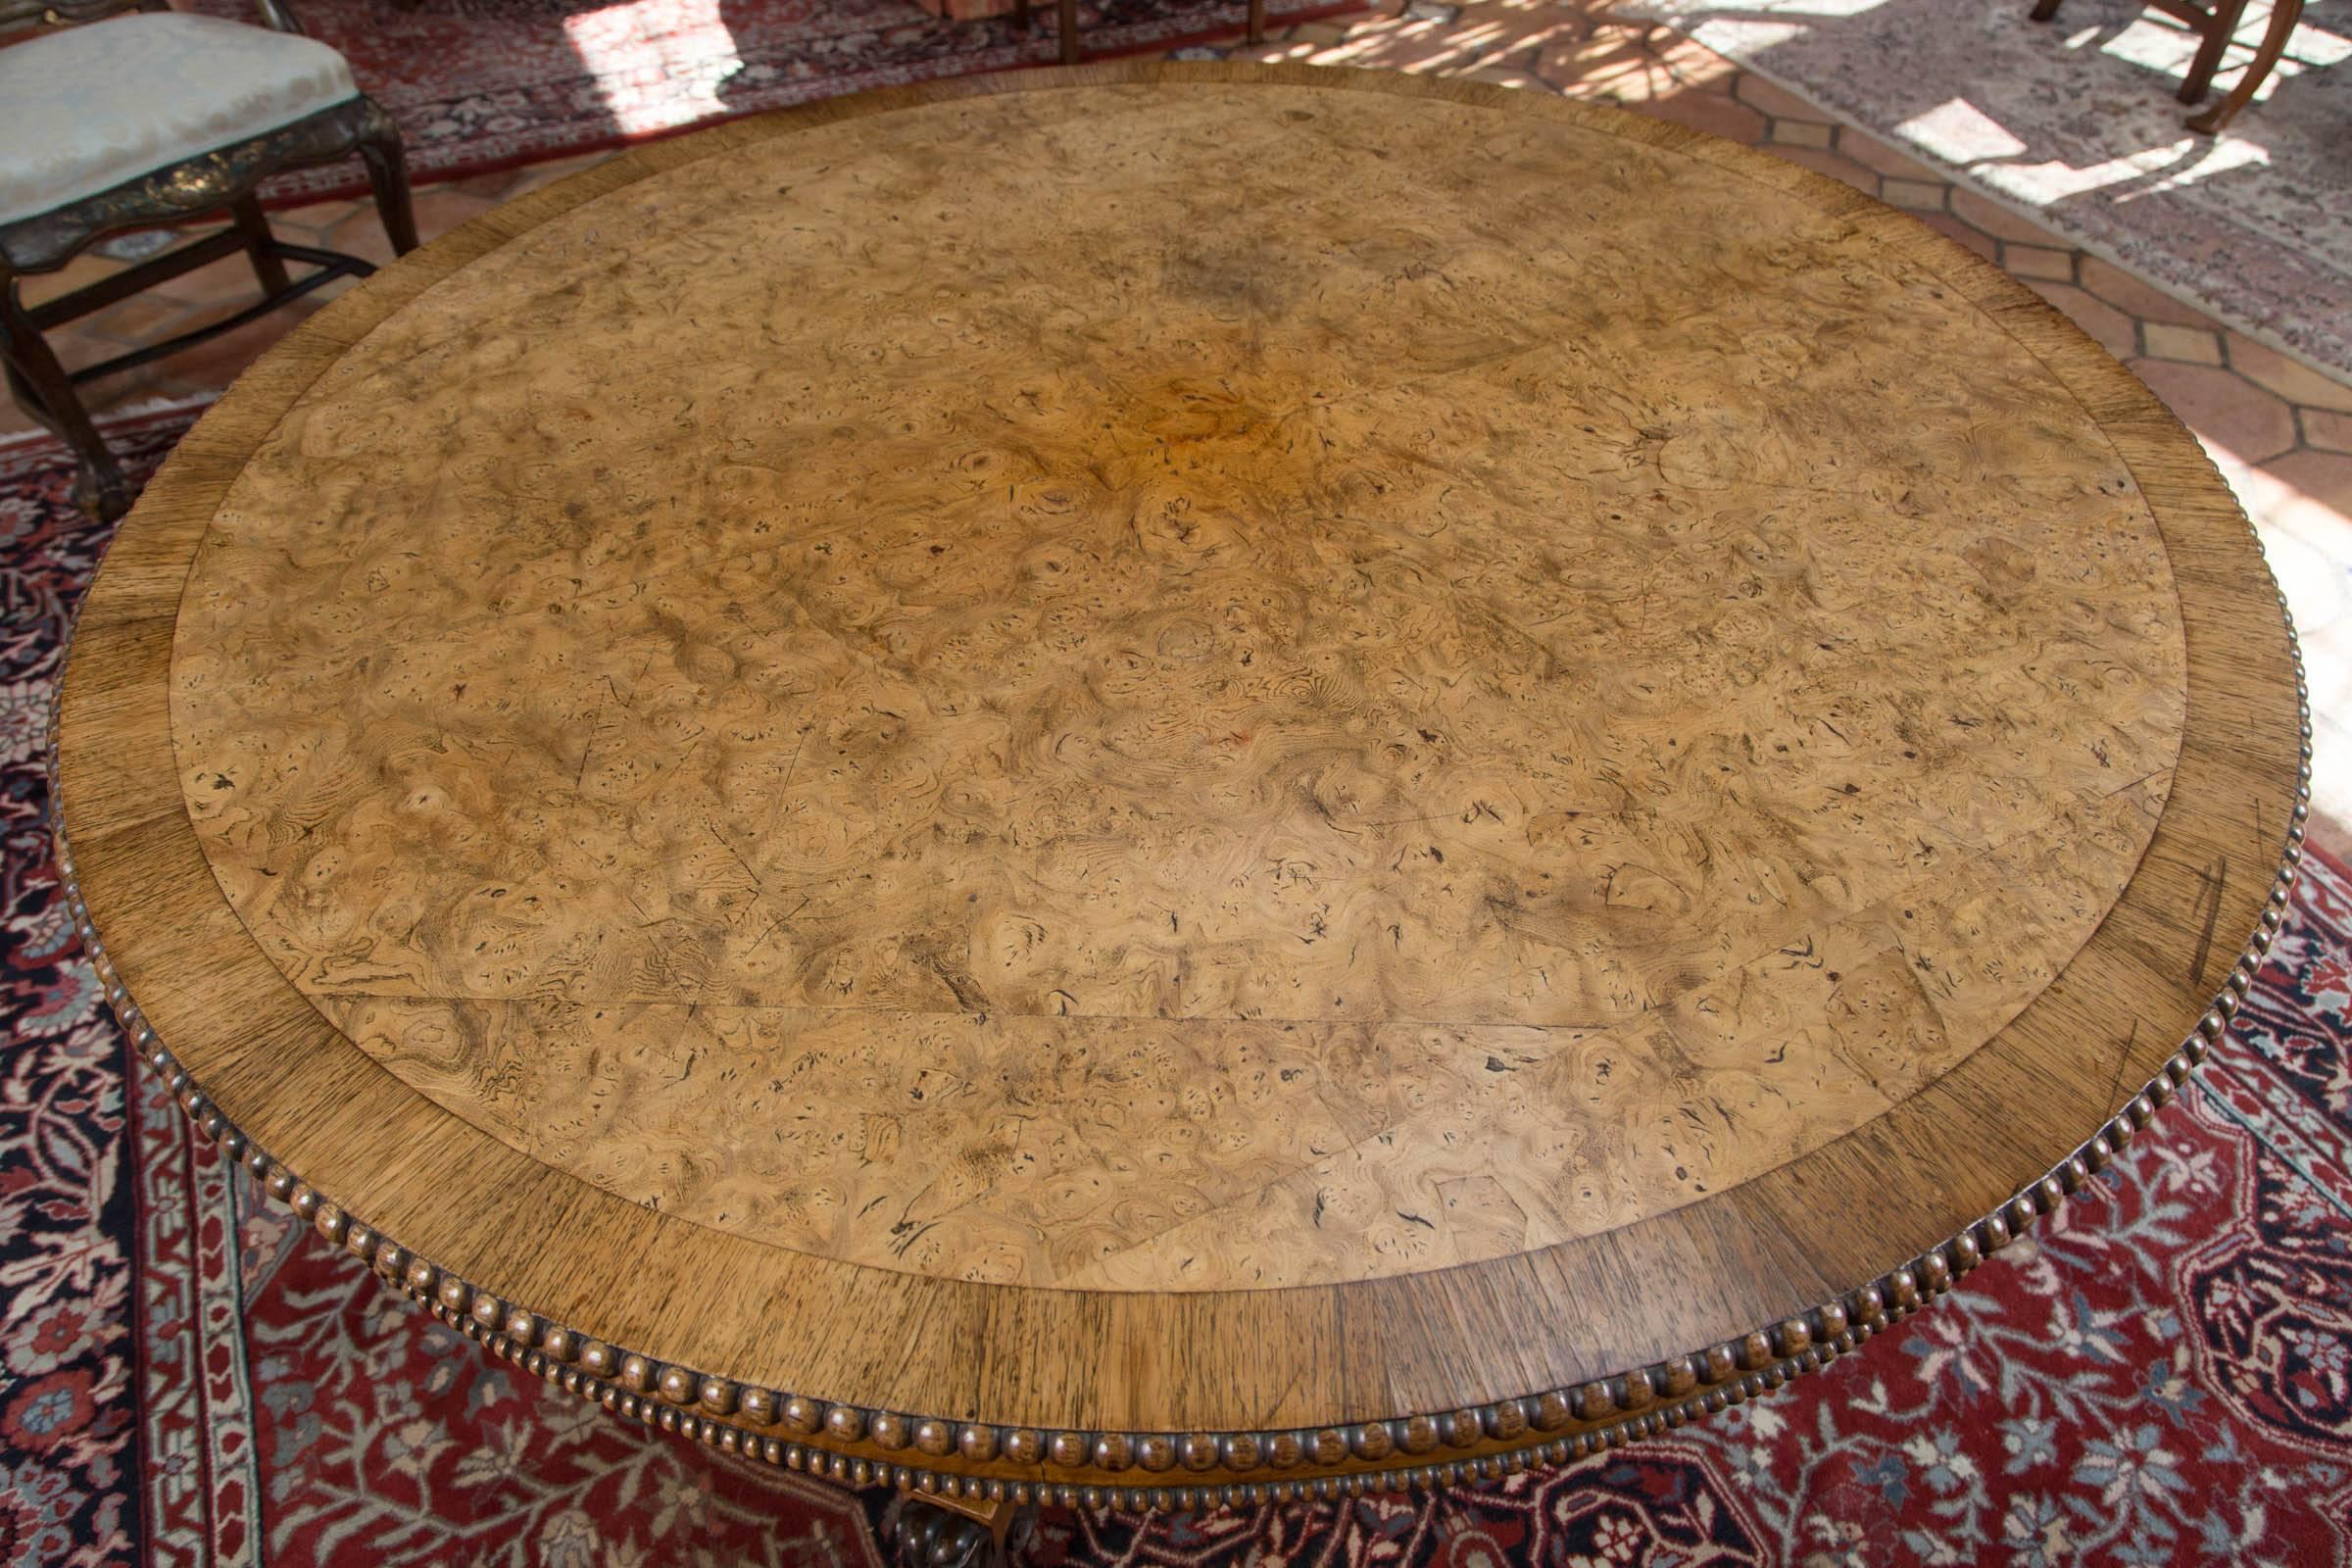 Englischer Regency-Mitteltisch aus Pollard-Eiche mit Eichenquerband. Der Tisch hat eine große Perlenkante über einer Schürze mit kleinerer Perlenkante. Konkave, vierseitige Säule auf konkavem, vierbeinigem Sockel, der mit ebonisierten, geschnitzten